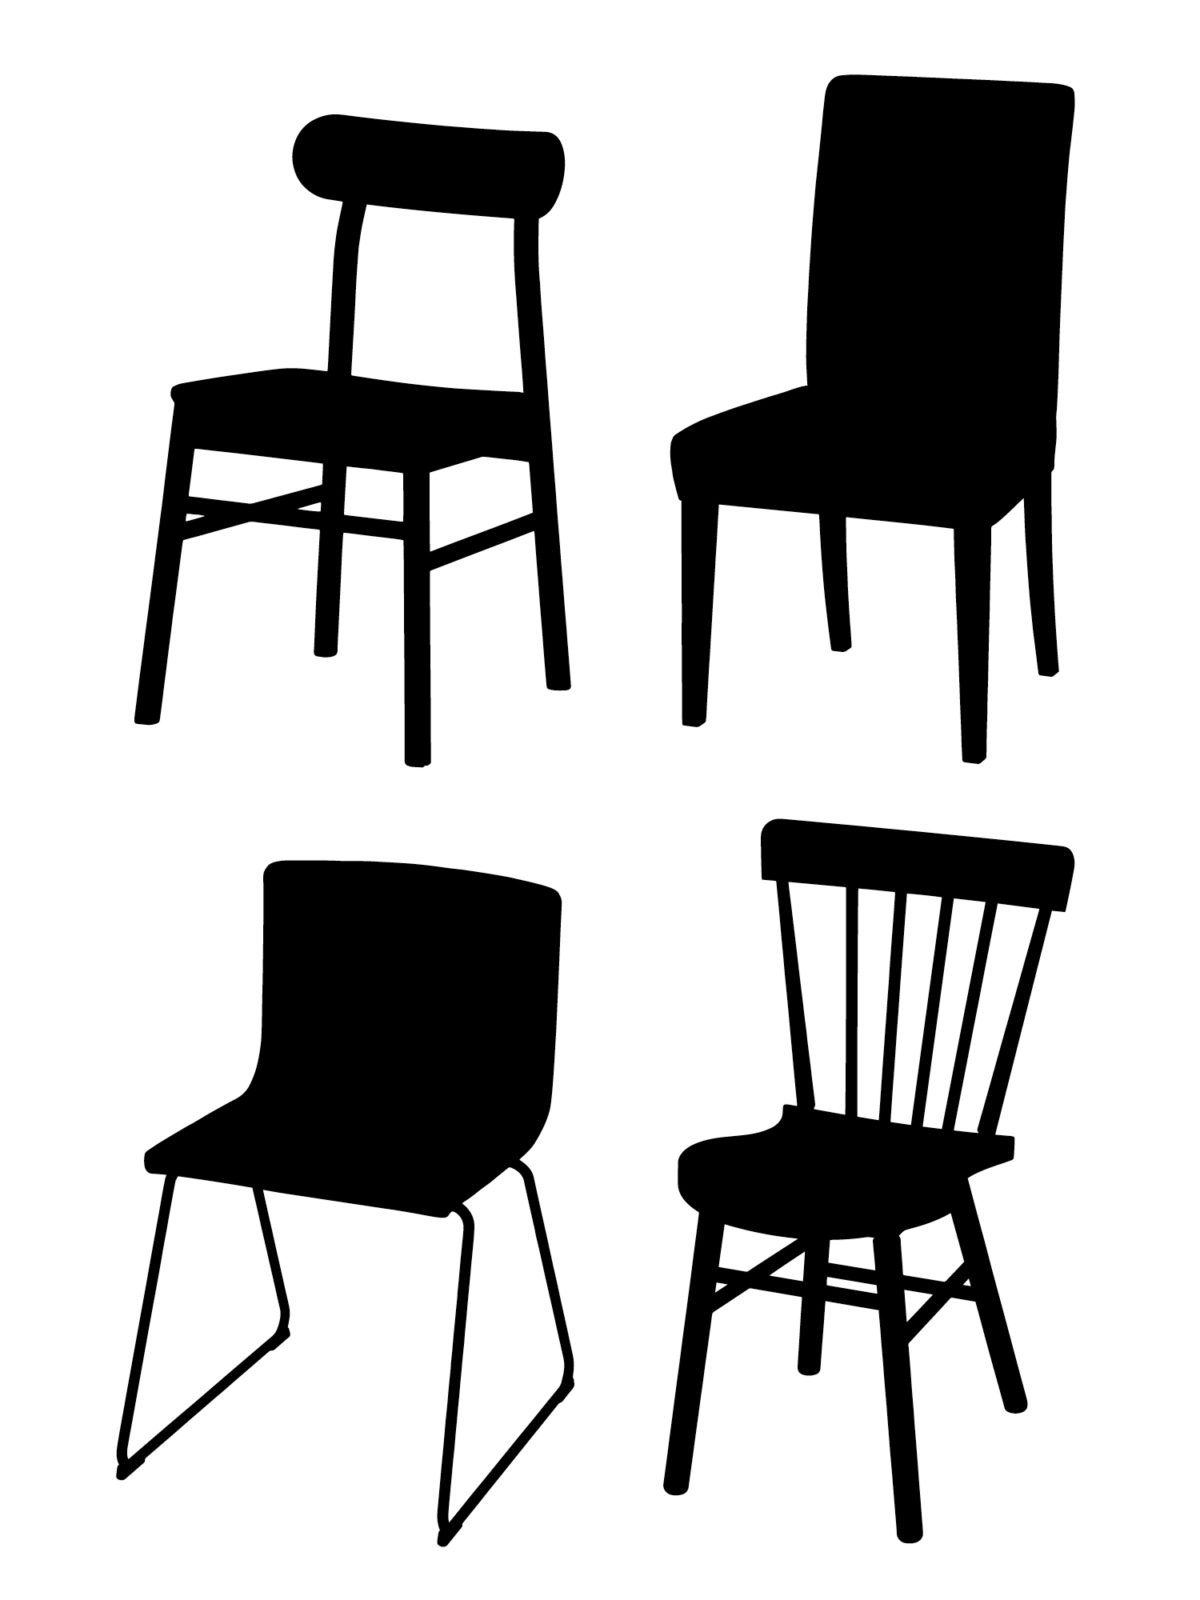 Svarta silhuetter av fyra enkla stolar i olika stilar.